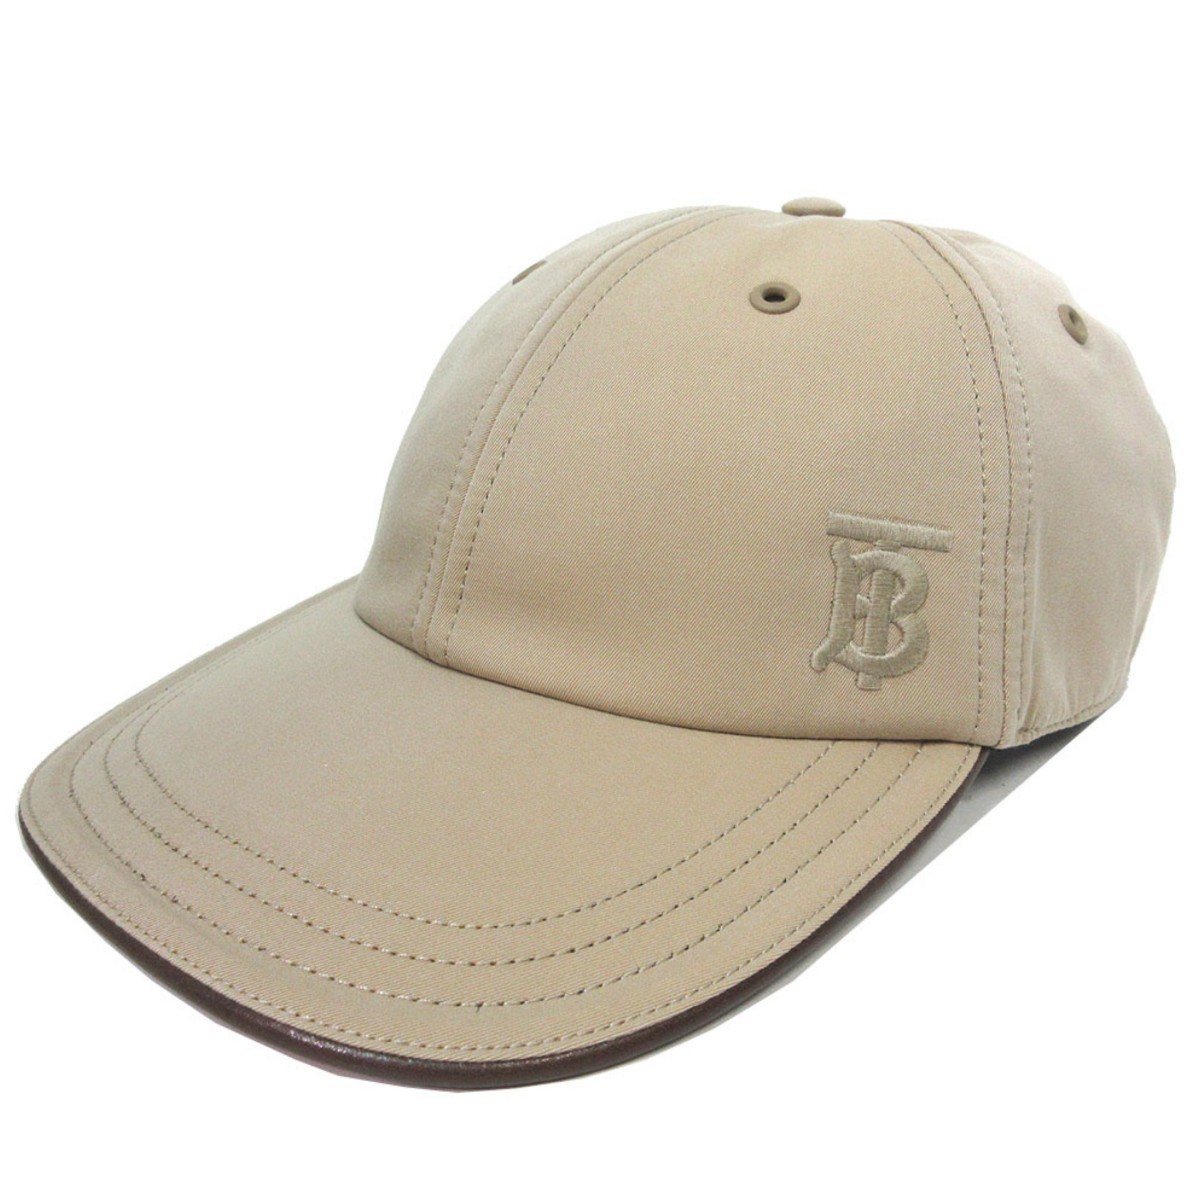 バーバリー 帽子 アパレル BURBERRY ヘリテージ ウィリアム ベースボール キャップ L 8068039 (ベージュ系)ブティック レディース